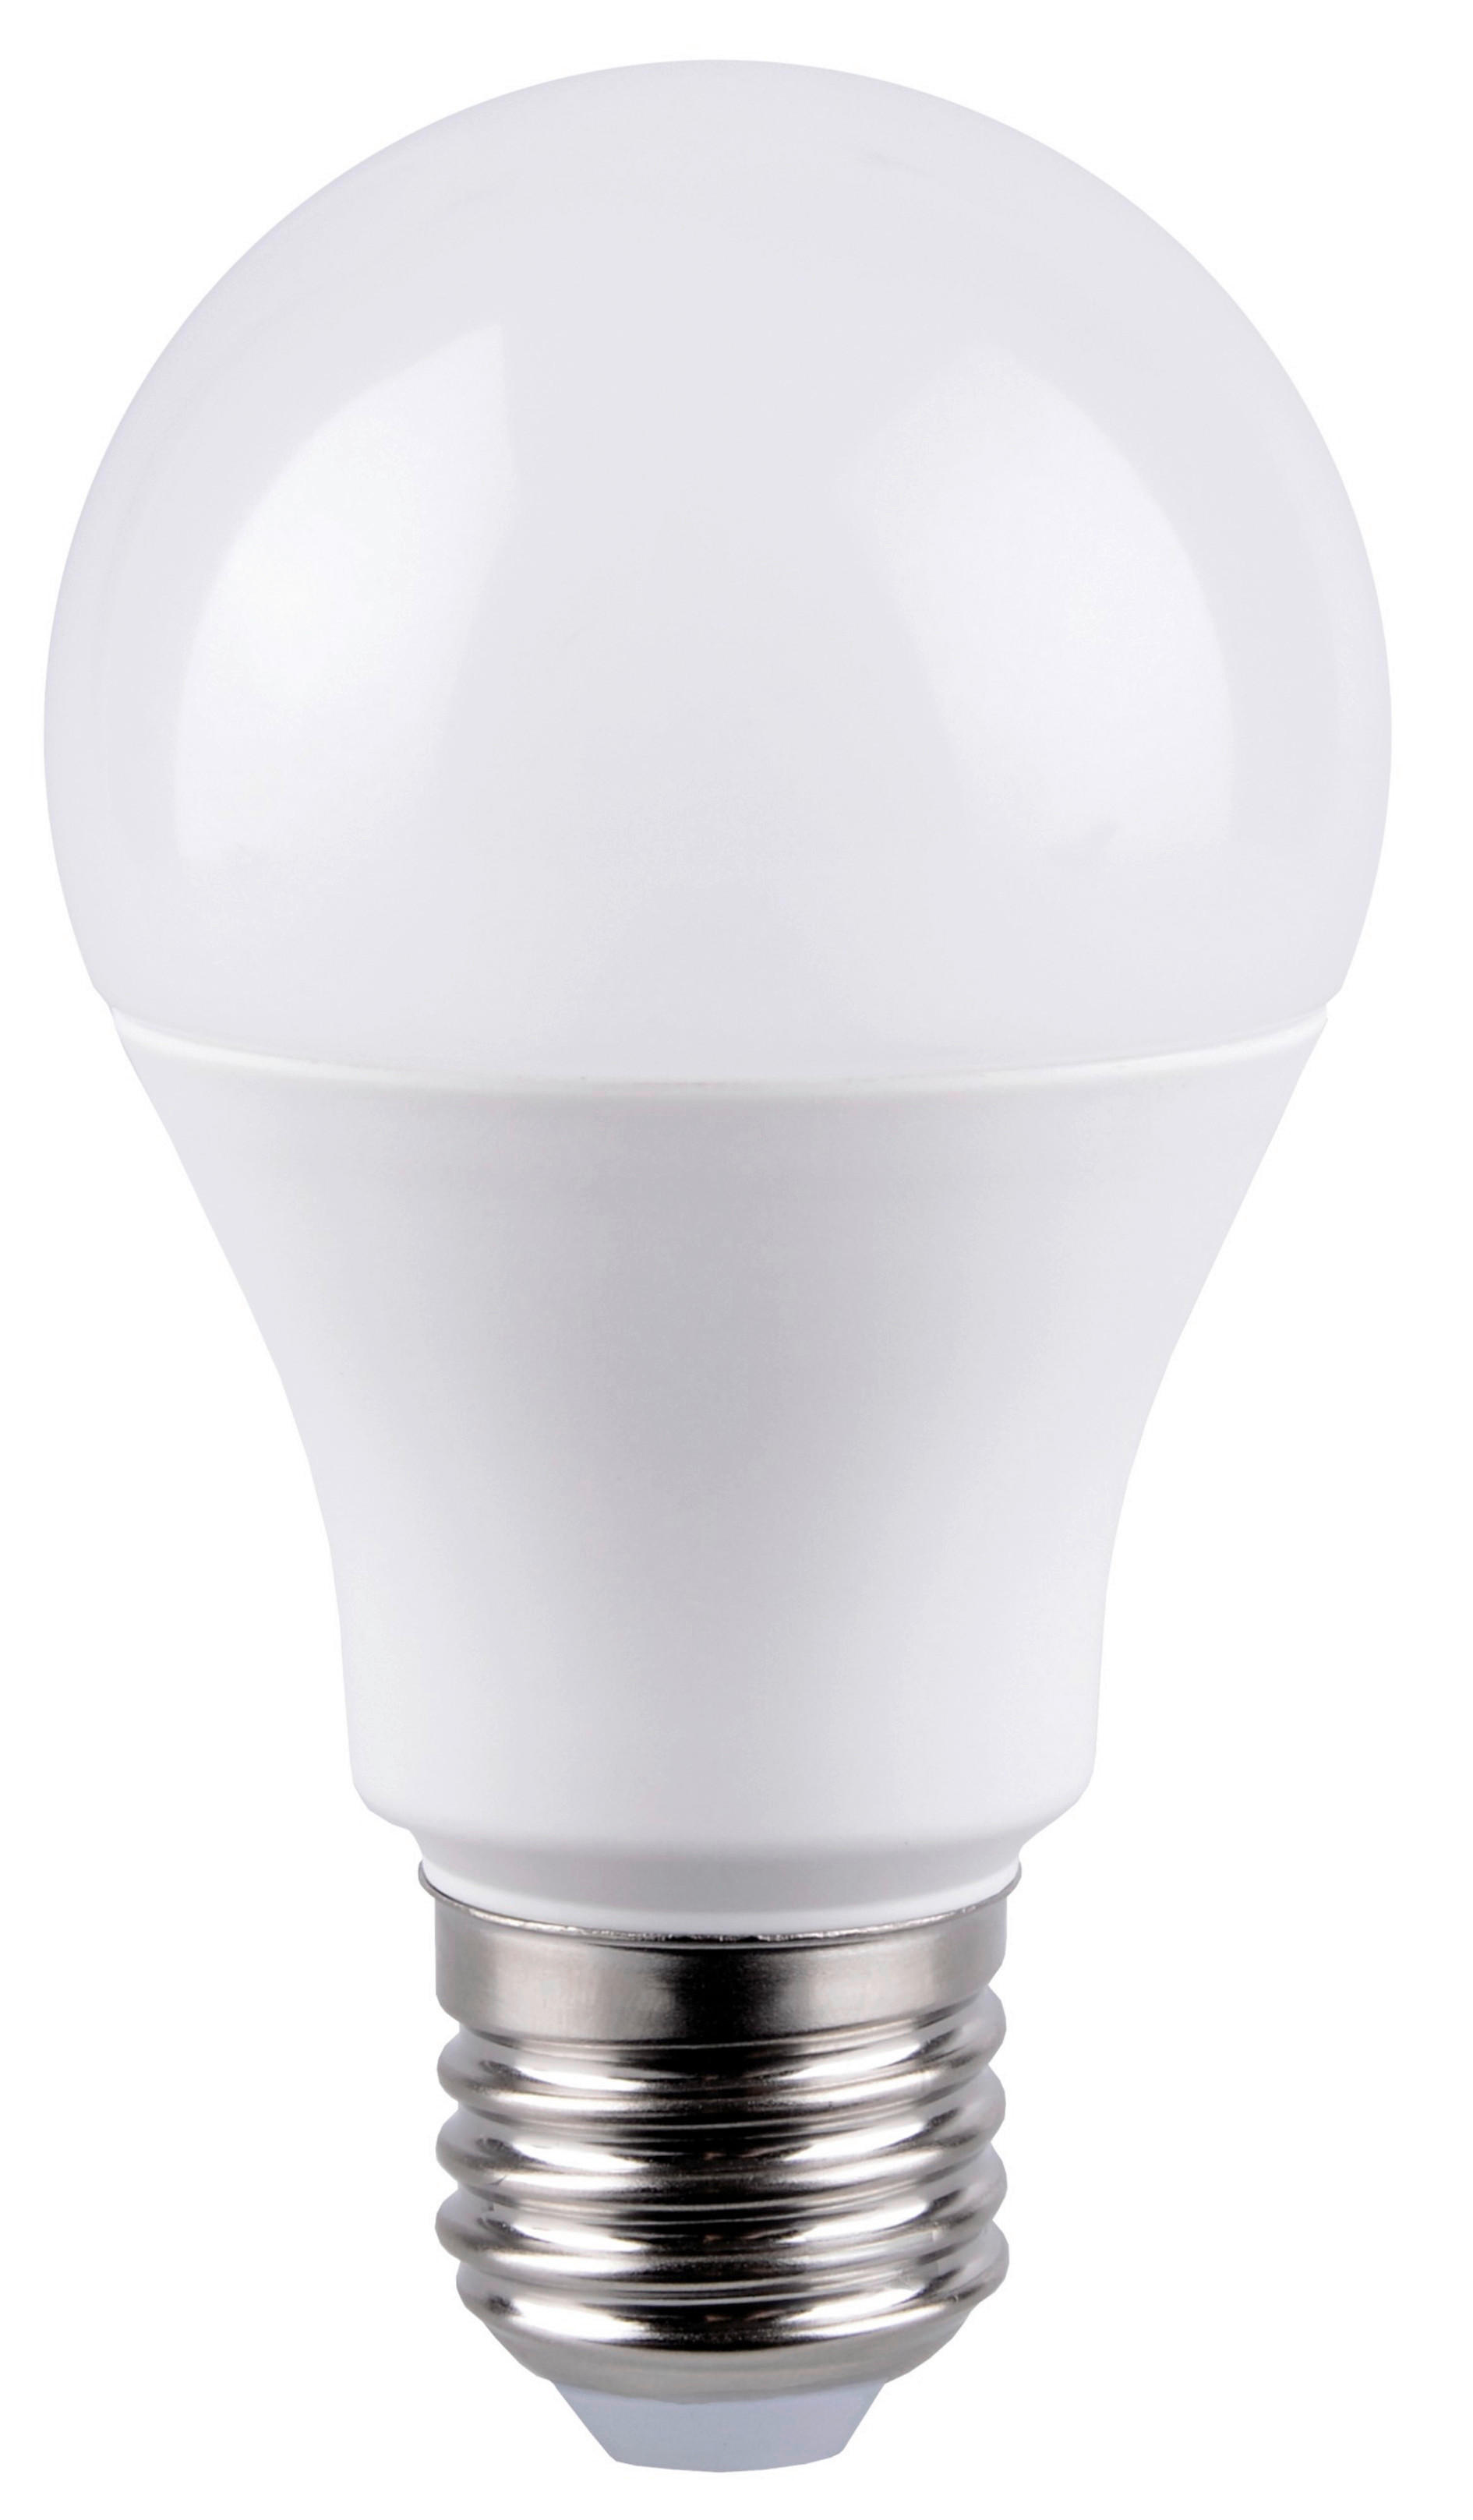 LED ŽIAROVKA - biela, Basics, kov/plast (6/10,8cm) - Boxxx